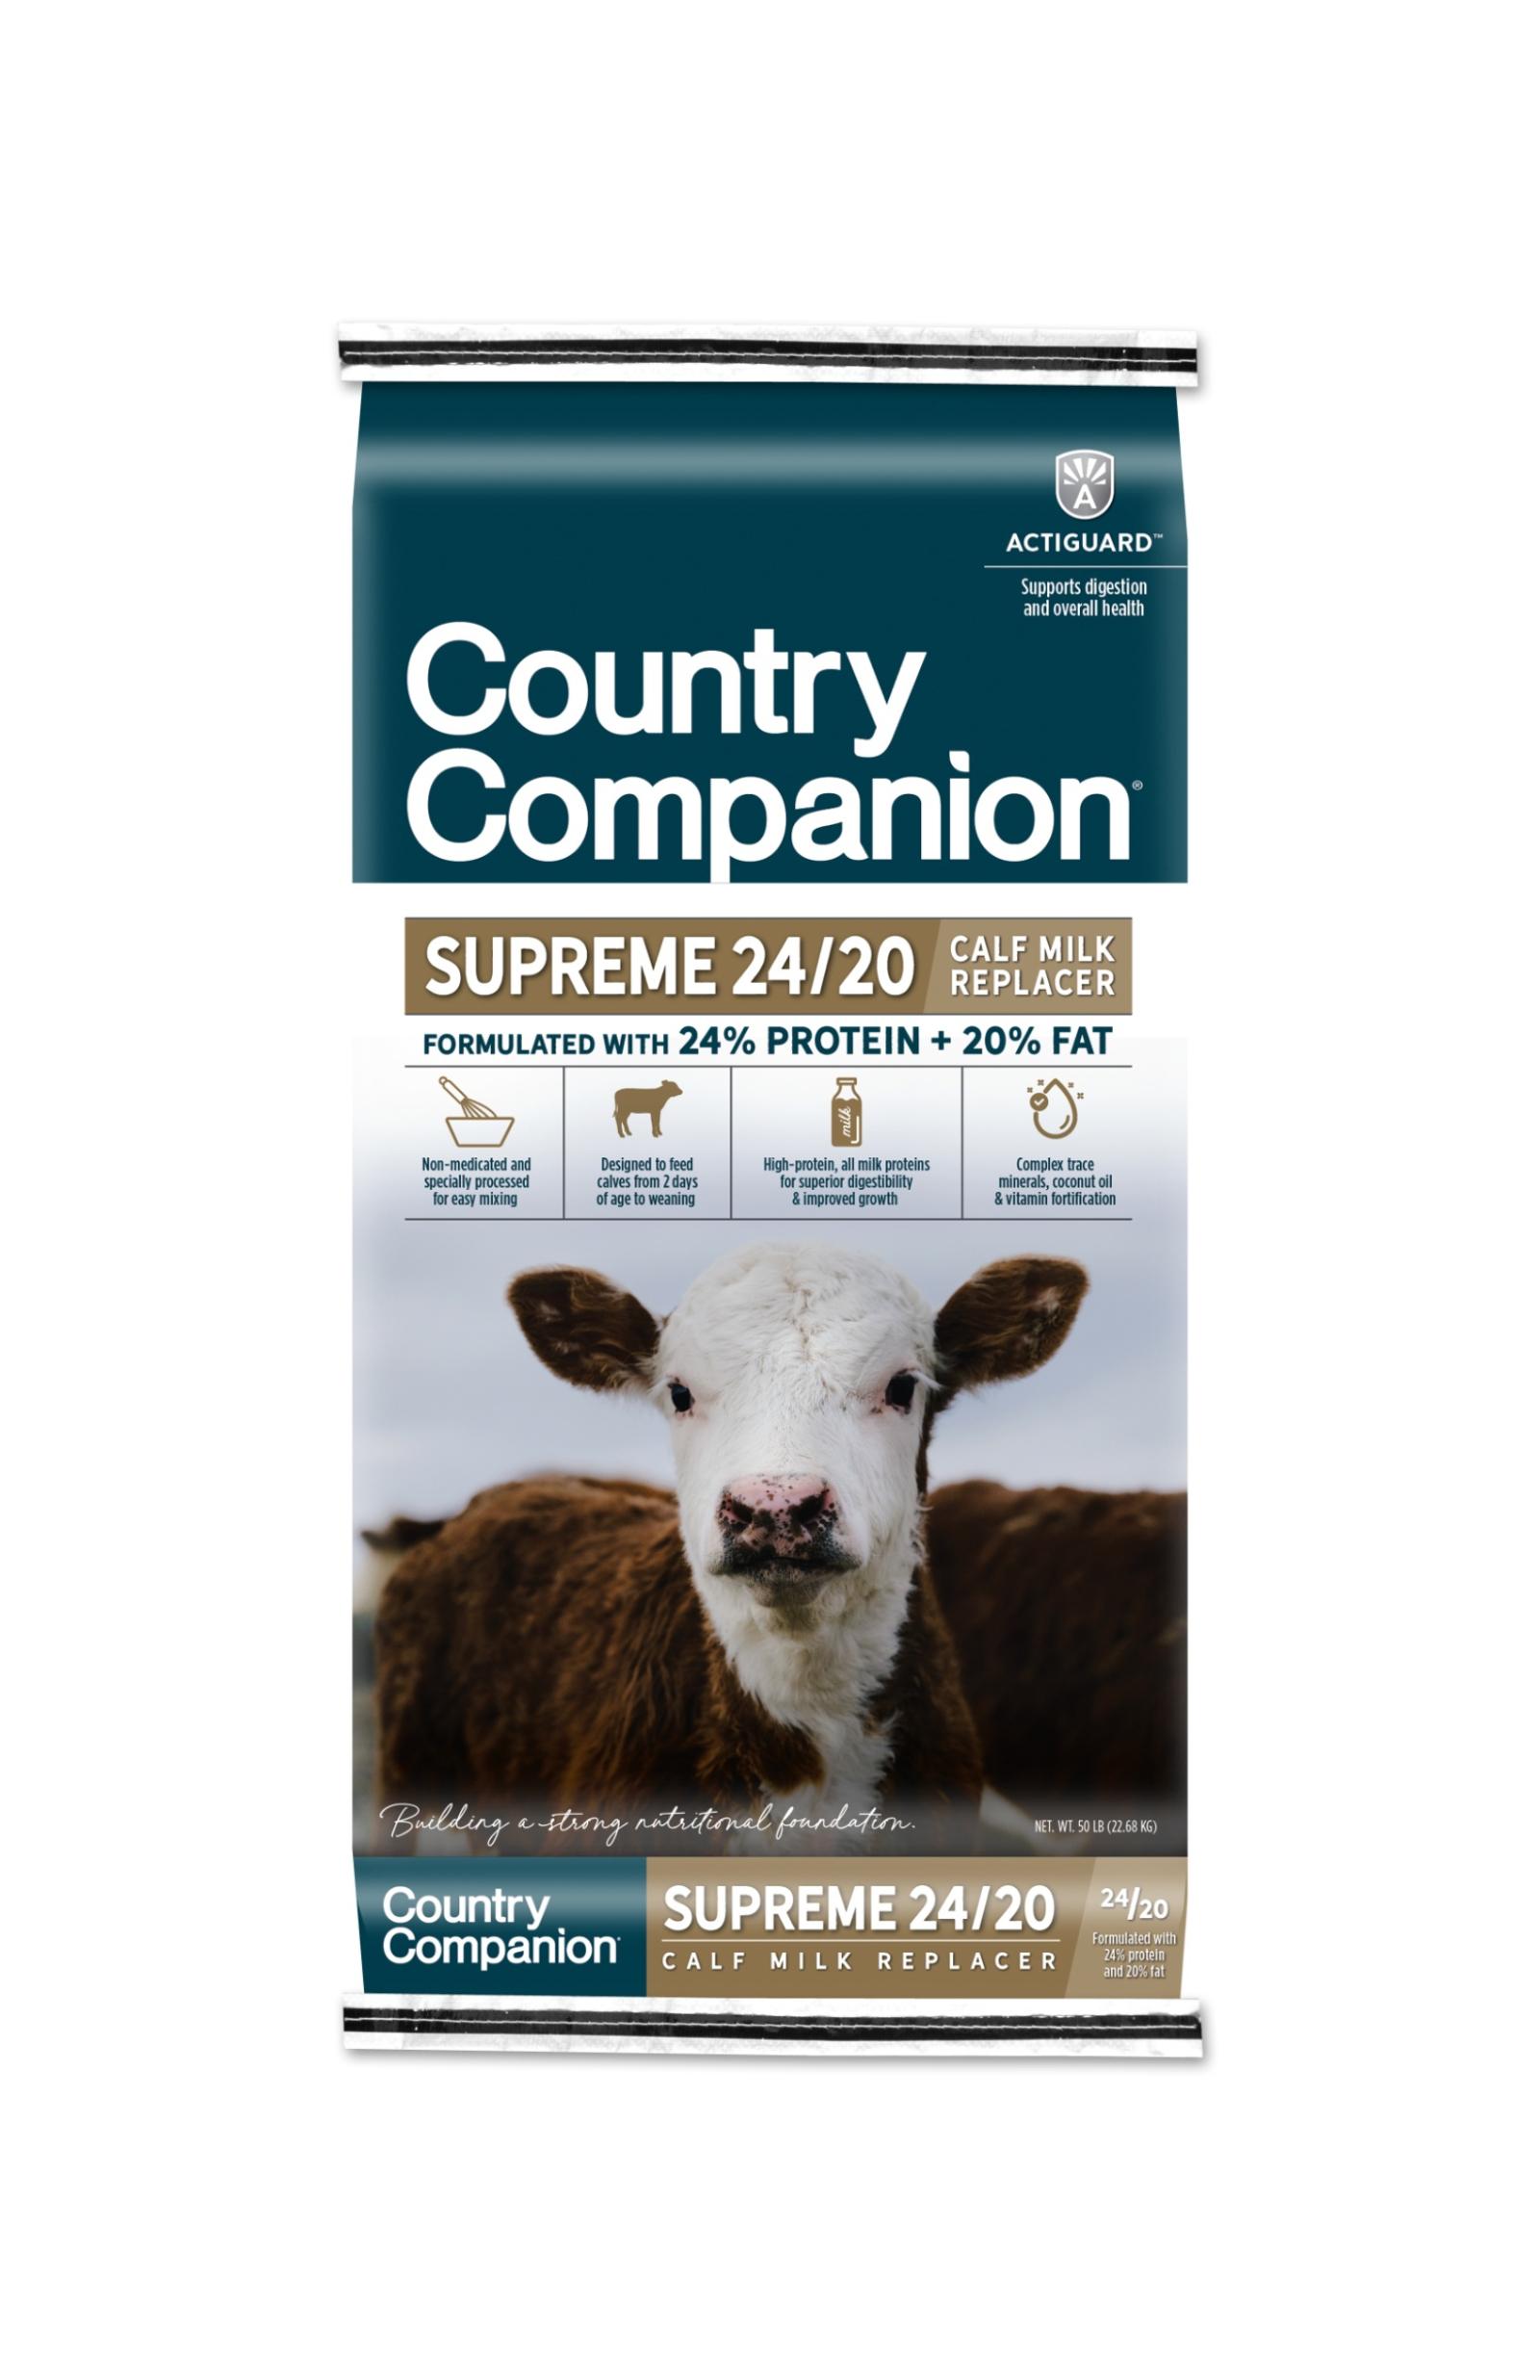 Country Companion Supreme 24/20 Calf Milk Replacer